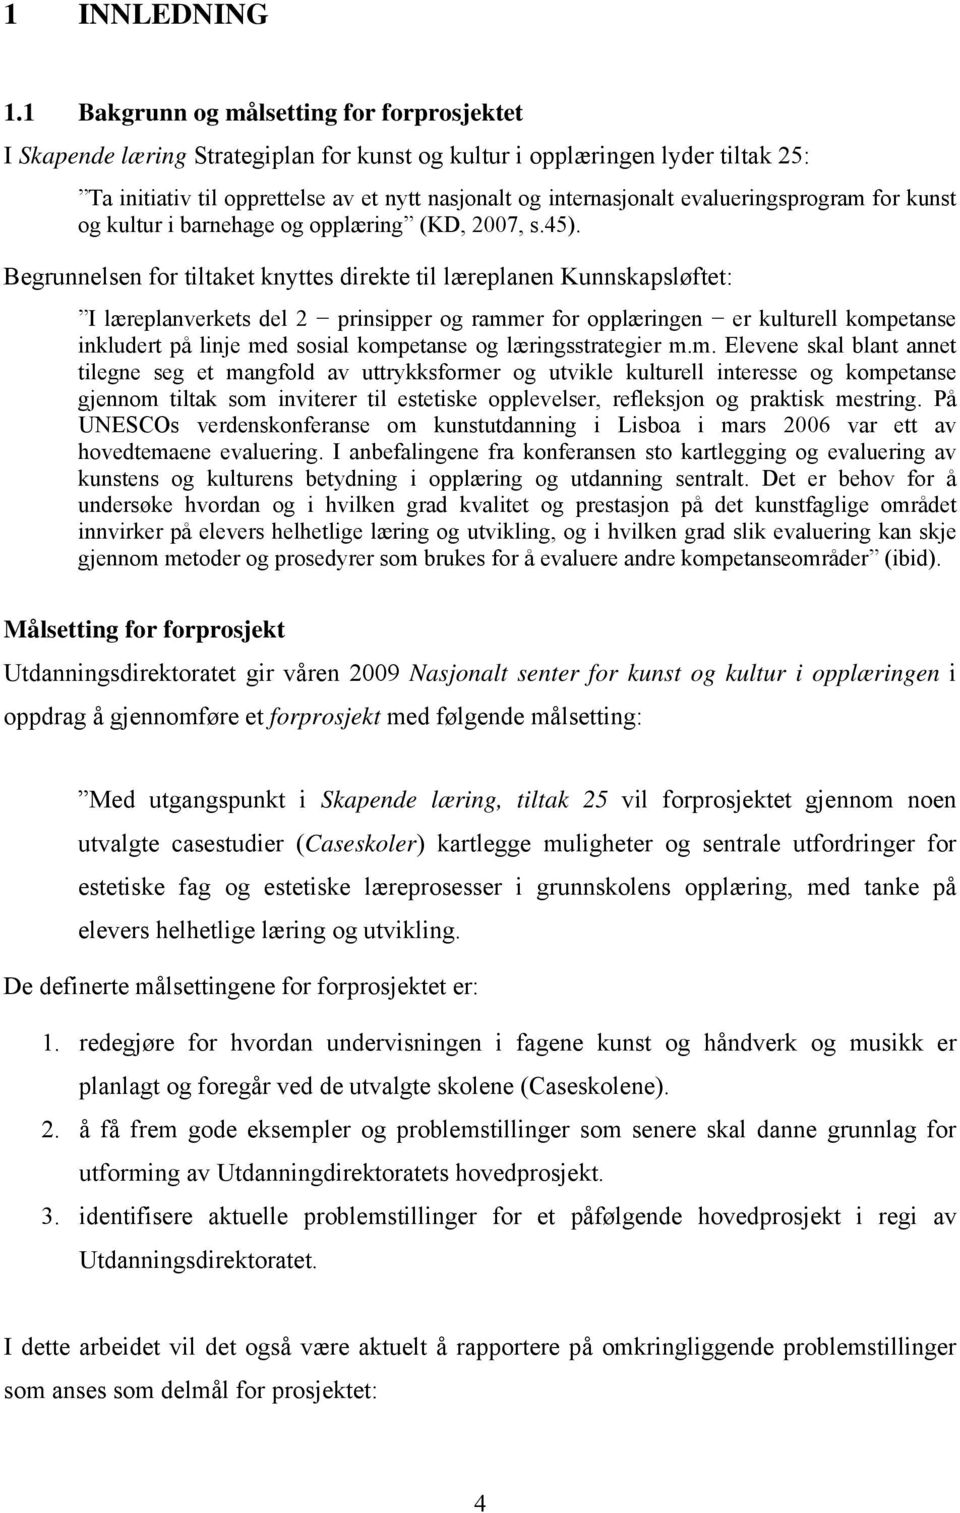 evalueringsprogram for kunst og kultur i barnehage og opplæring (KD, 2007, s.45).